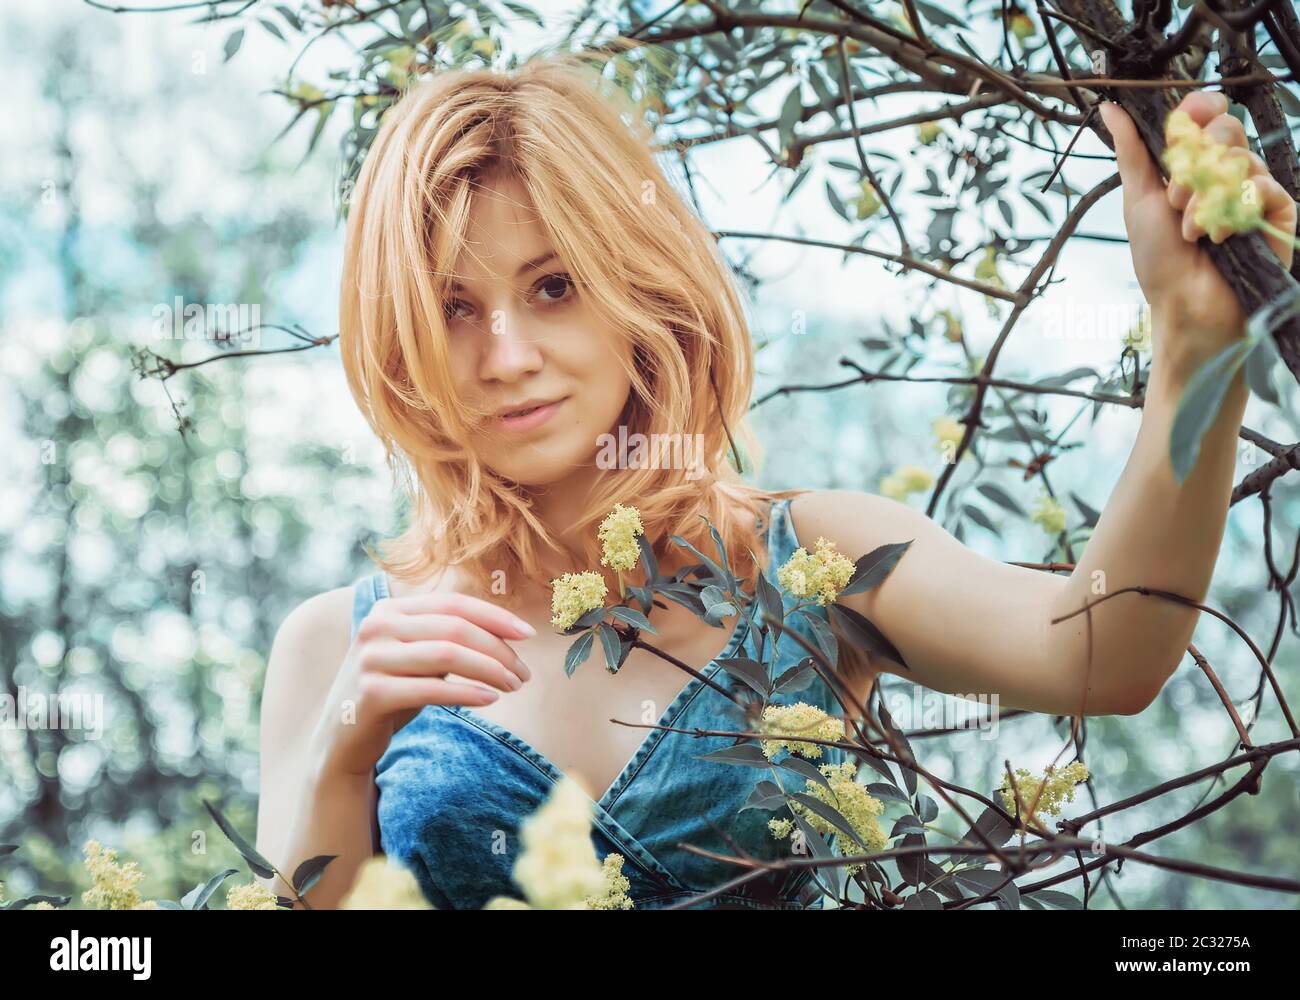 Belle blonde jeune femme en denim sujet doucement souriant avec sympathie regardant la caméra, debout parmi les branches fleuries sur la nature. Sélection Banque D'Images